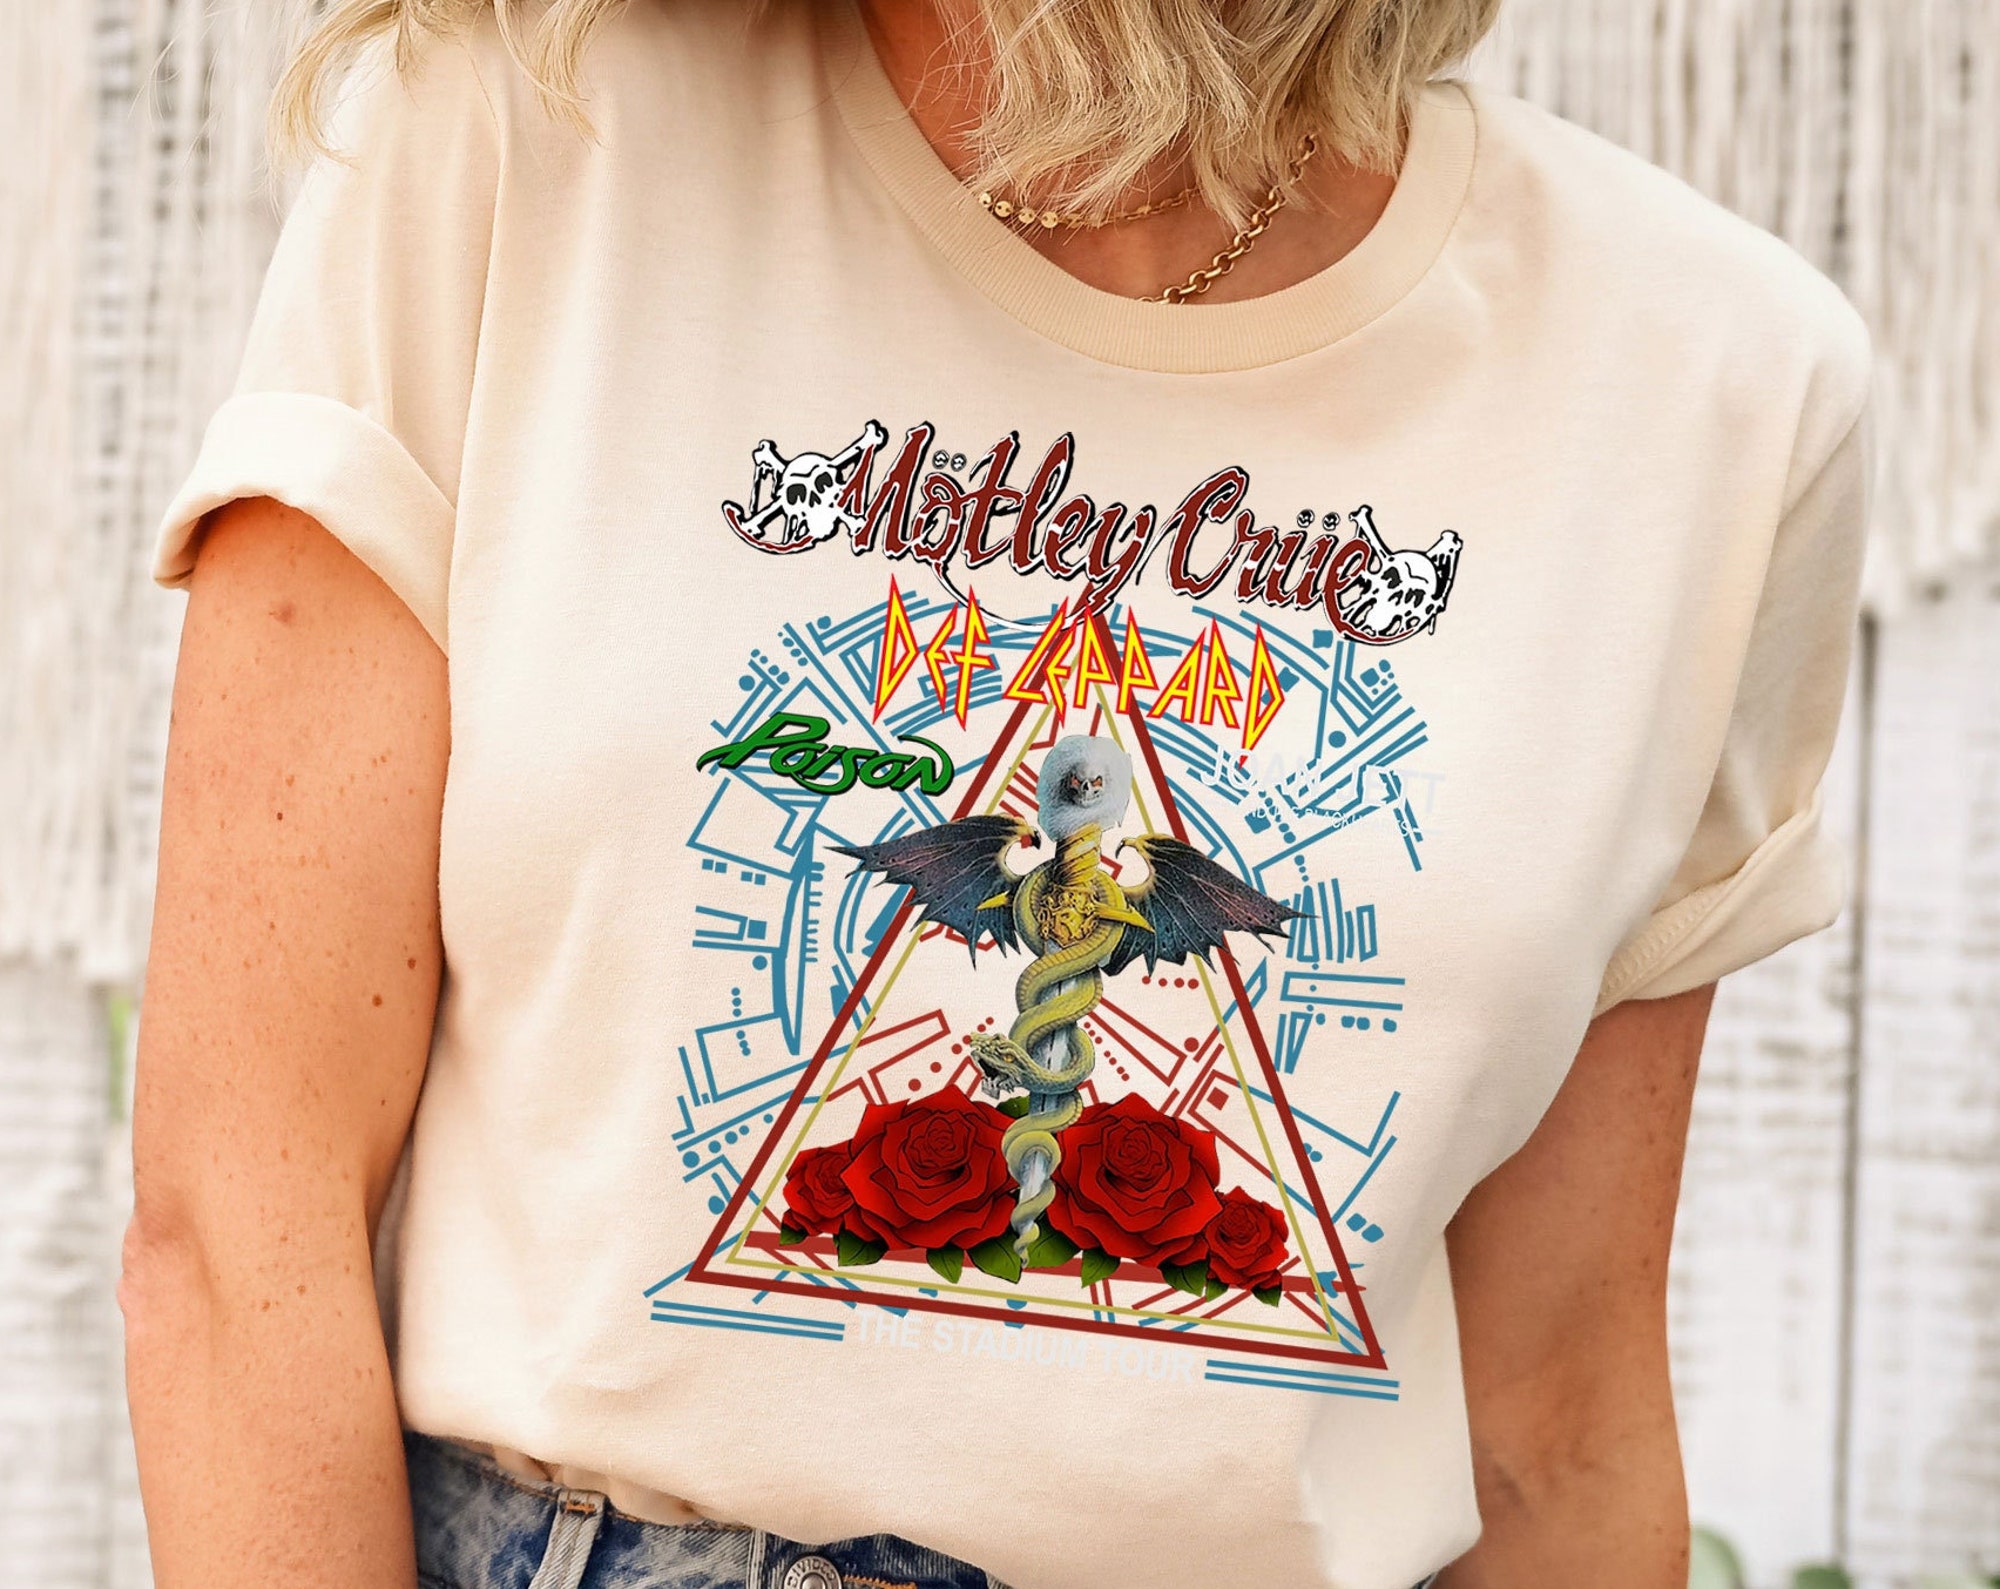 Discover Motley Crue Shirt, Def Leppard Shirt, Motley Crue Concert Shirt